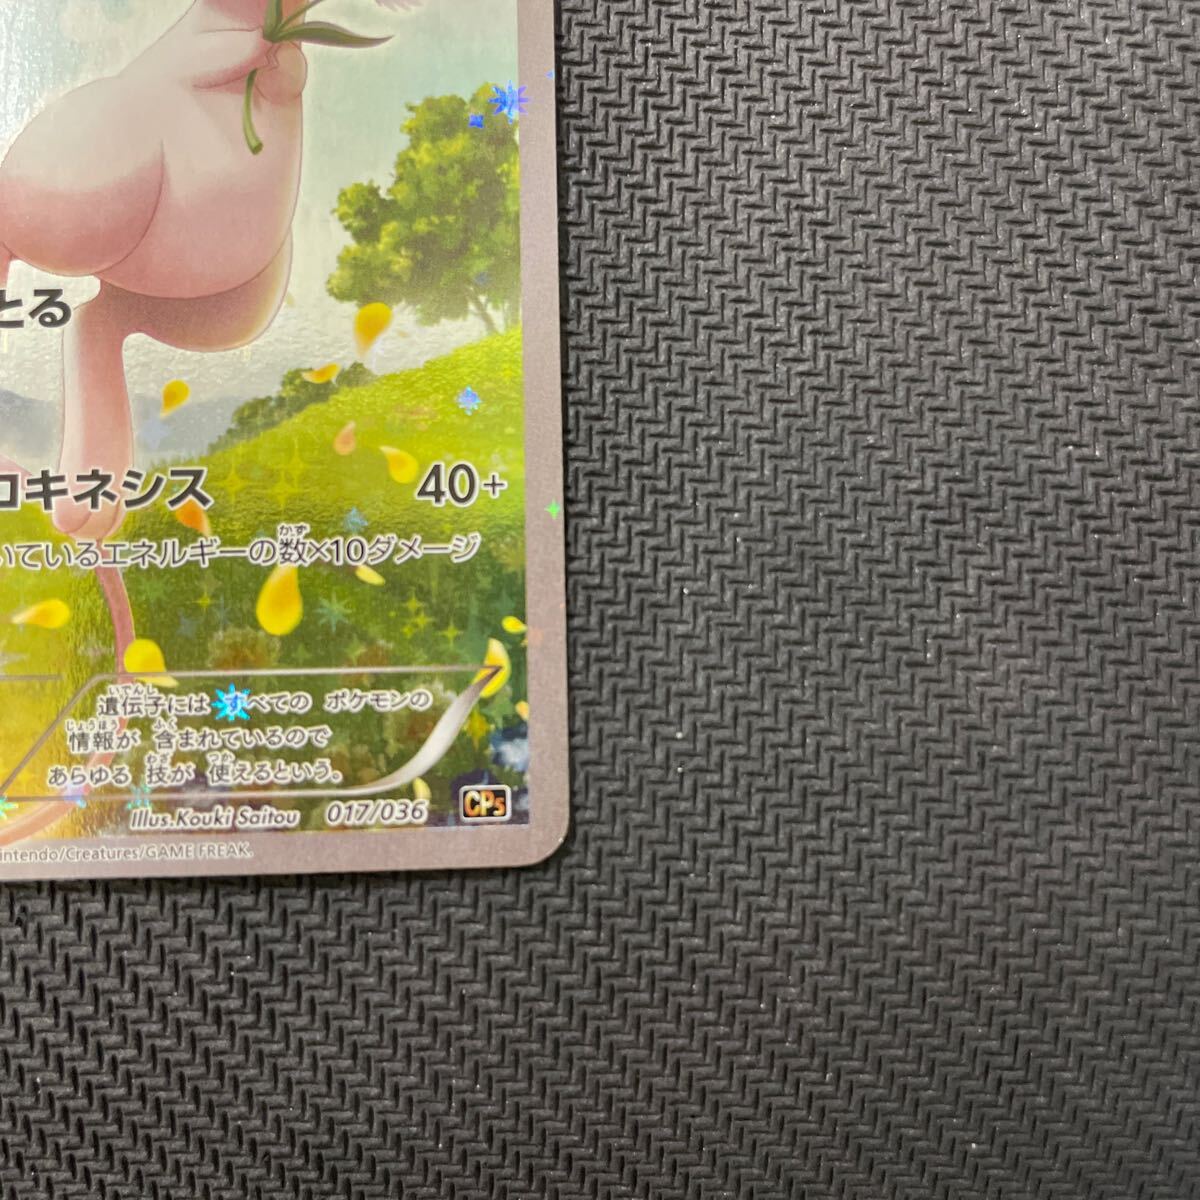  Pokemon card myuuCP5 017/036 1EDTION illusion * legend Dream kila collection Pokemon Mew